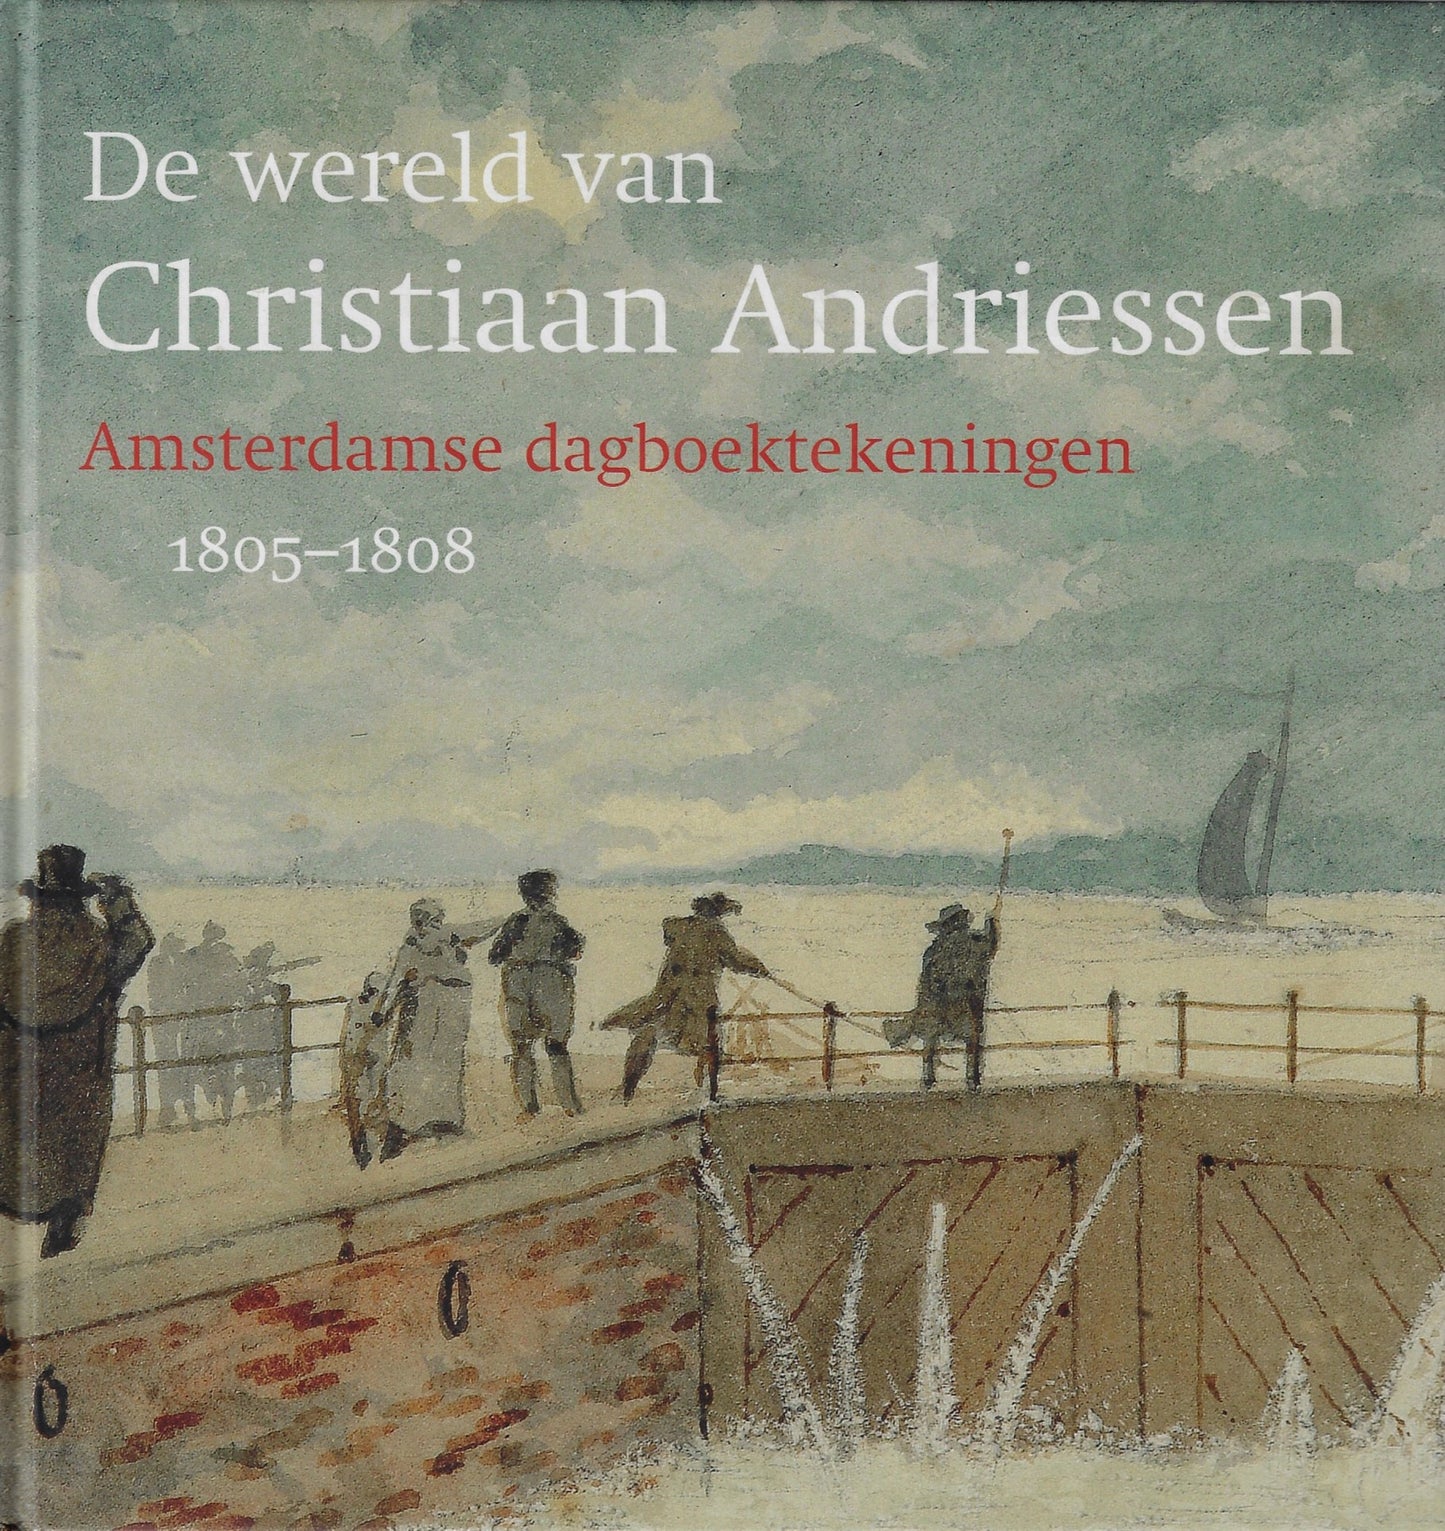 De wereld van Christiaan Andriessen / Amsterdamse dagboektekeningen 1805-1808